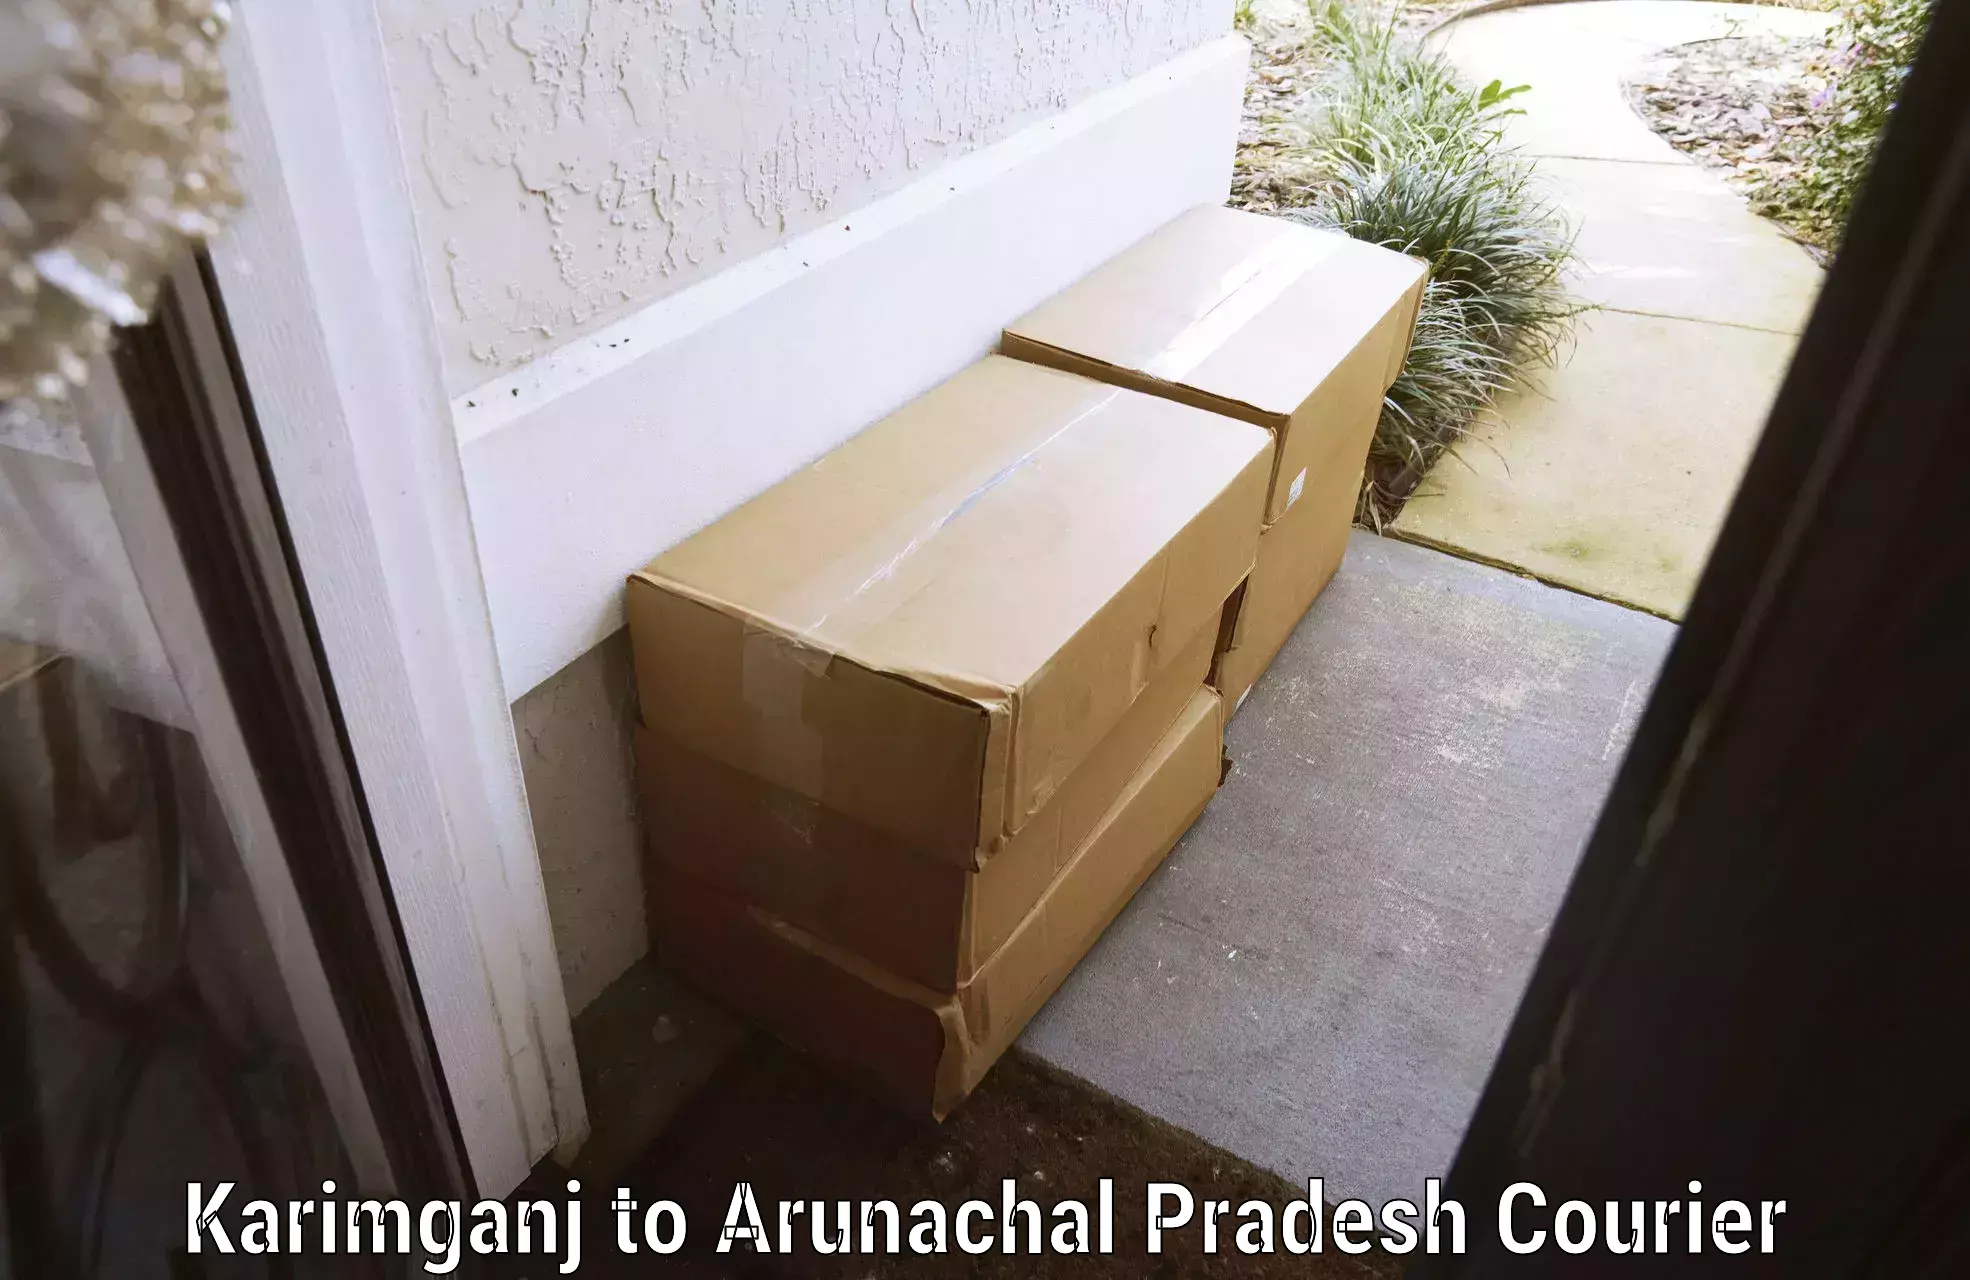 Baggage handling services Karimganj to Arunachal Pradesh